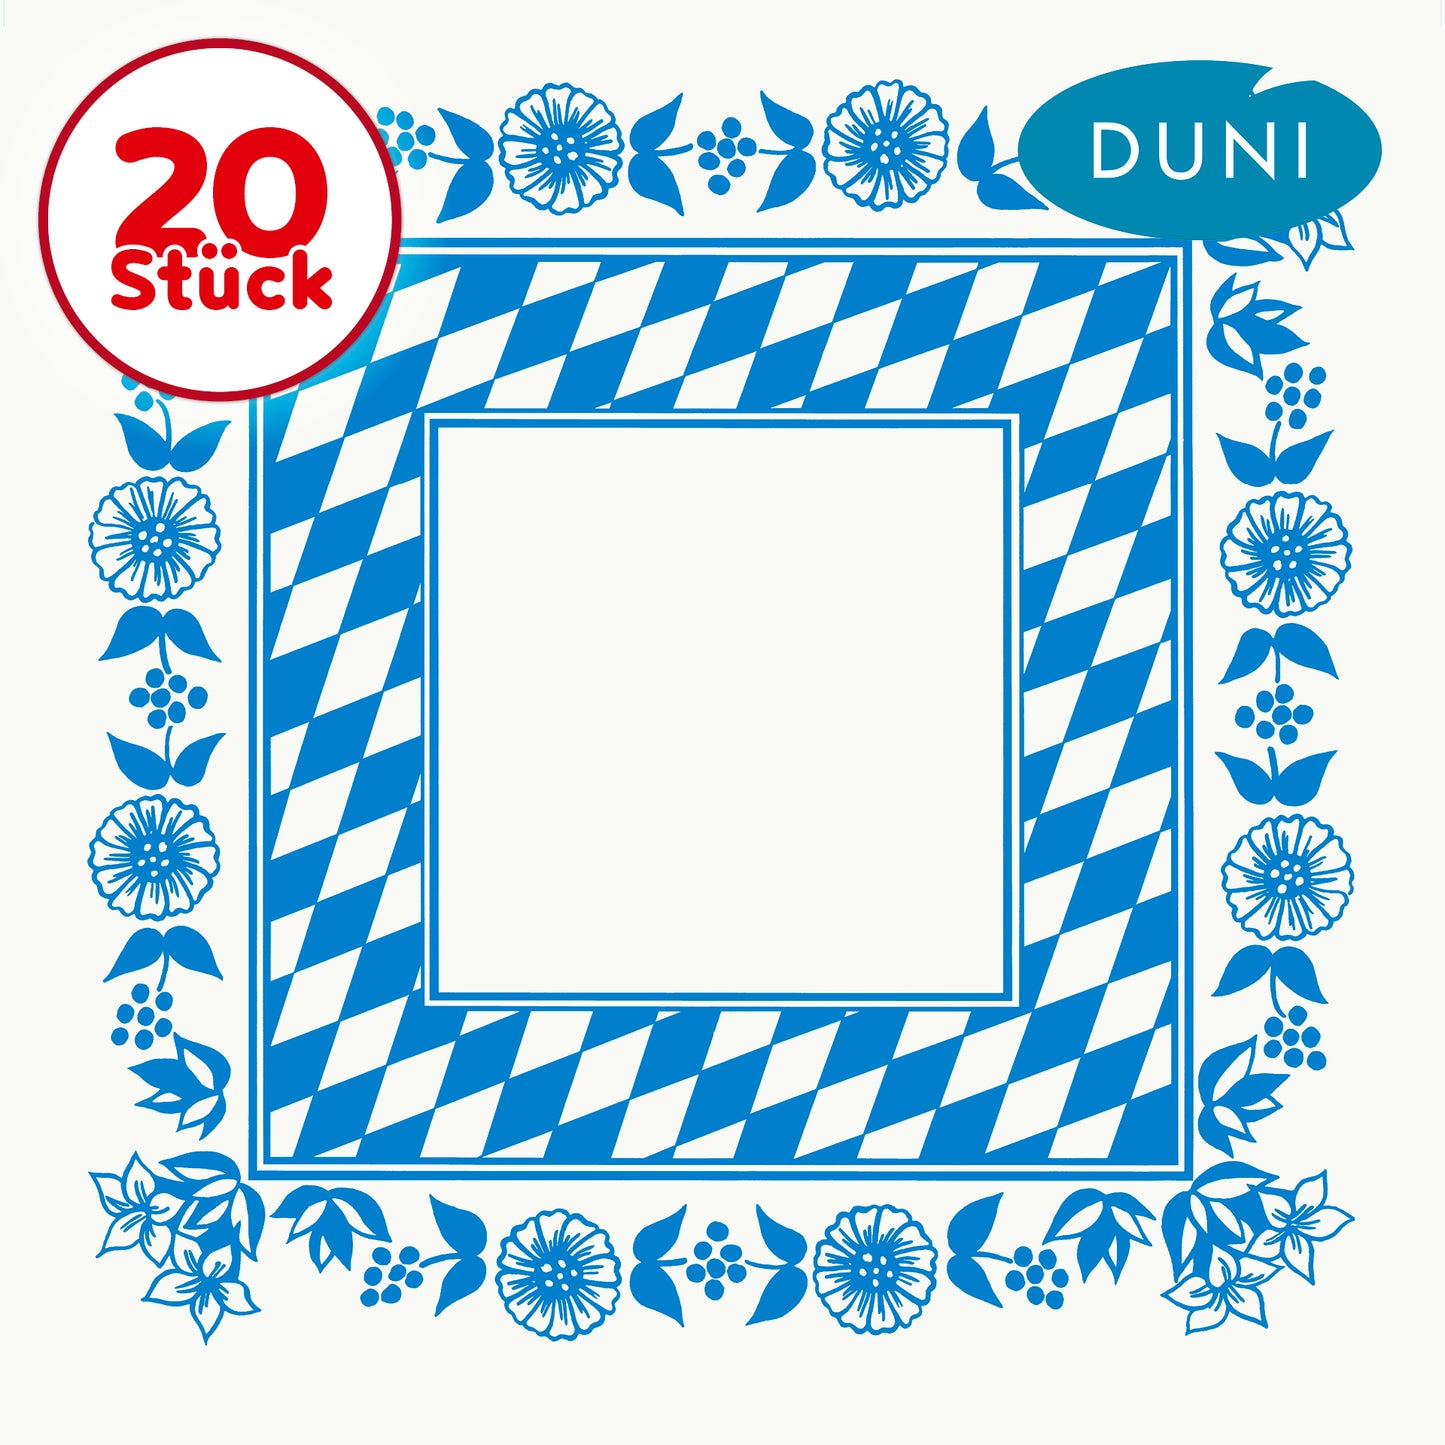 DUNI Dunicel Mitteldecke bayrische Raute 84 x 84 cm